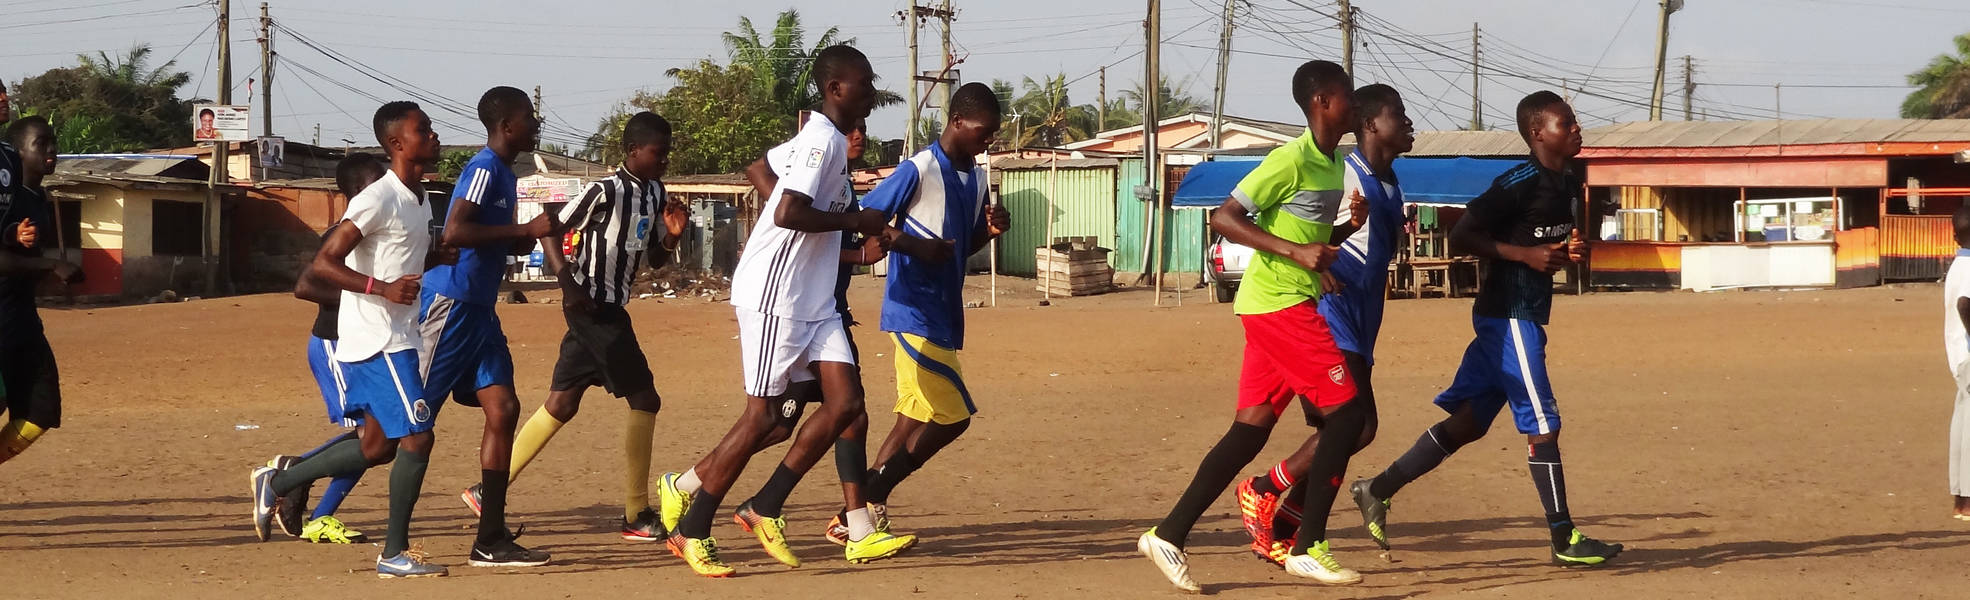 Freiwilligenarbeit als Fußballtrainer in Ghana